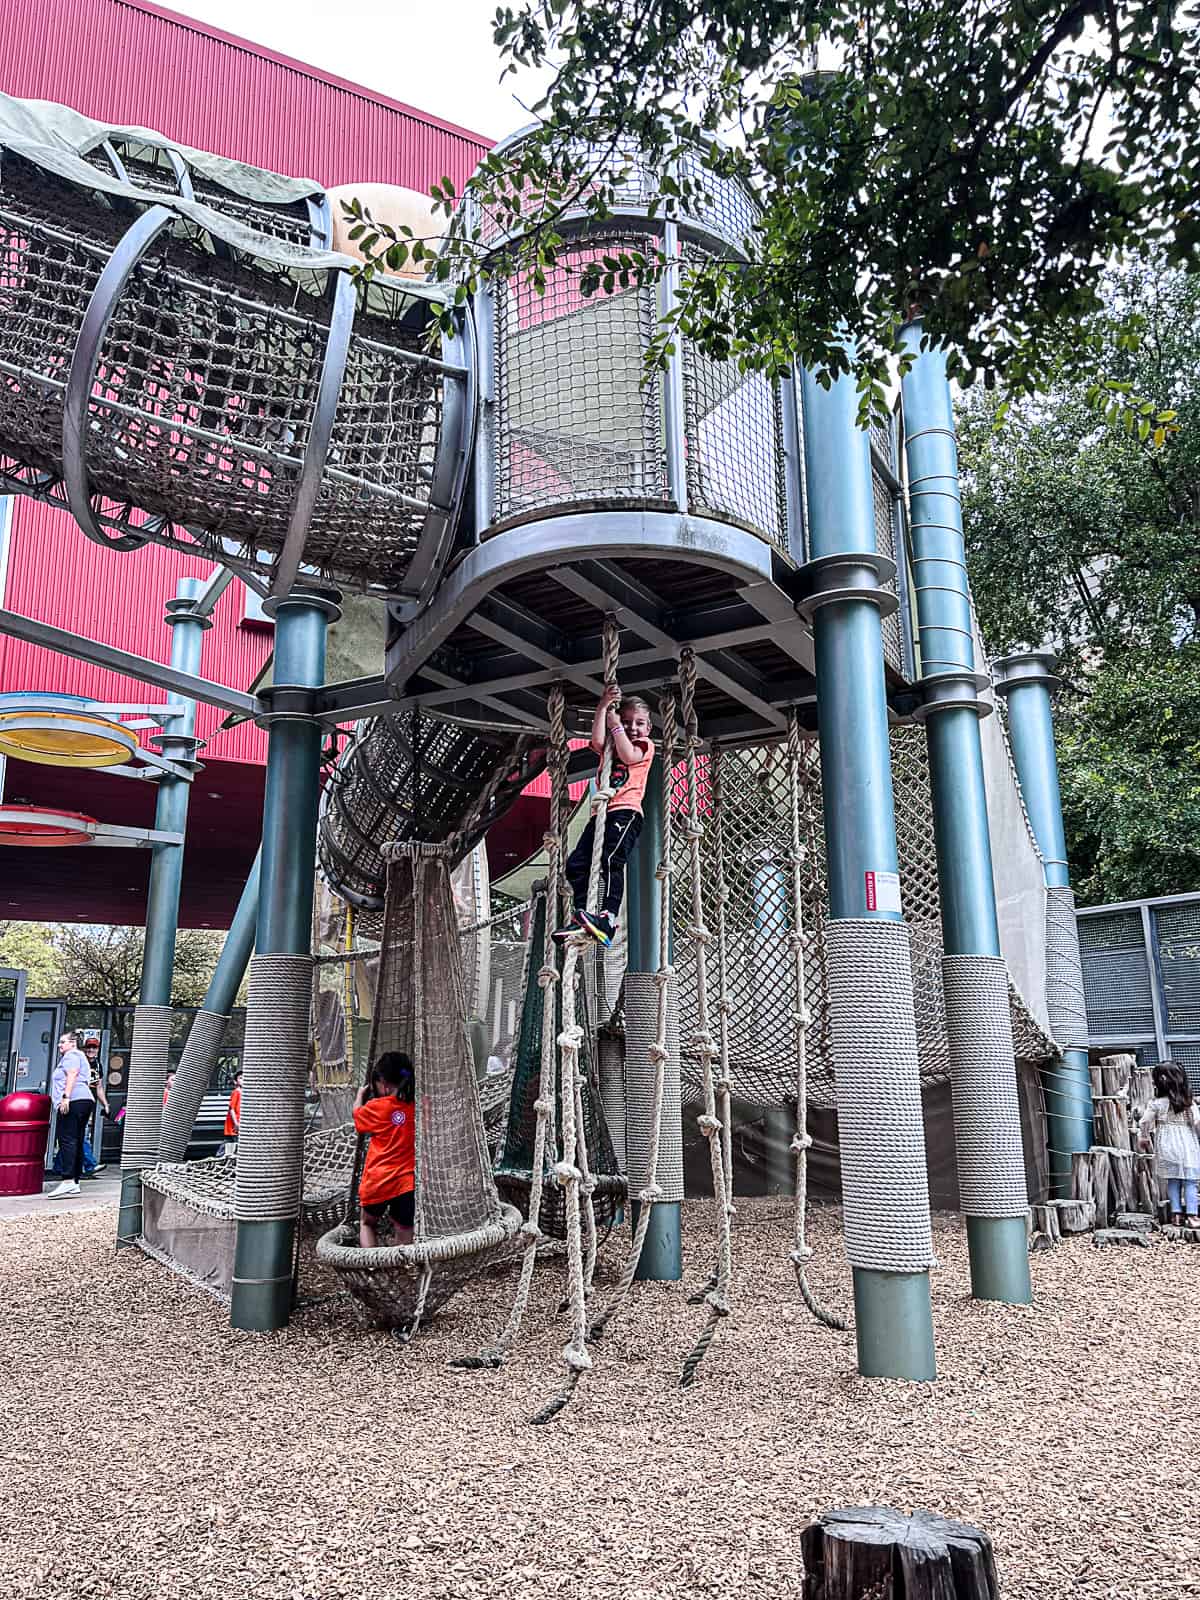 Playground at Children's Museum Thinkery Austin TX